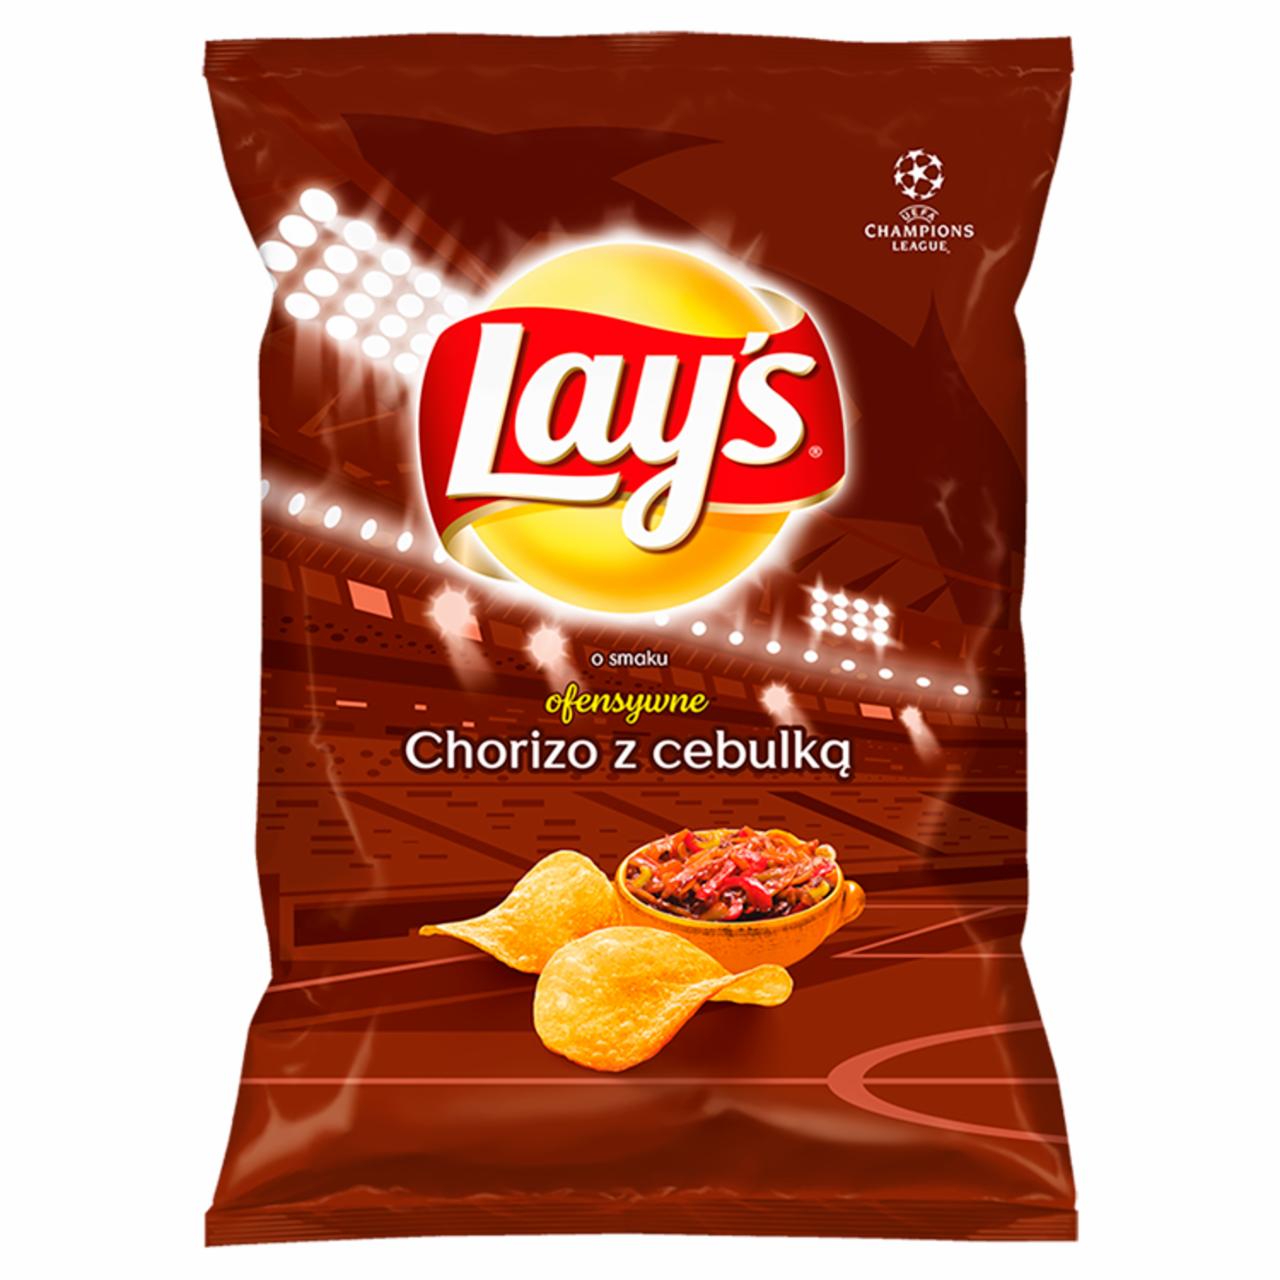 Zdjęcia - Lay's Chipsy ziemniaczane o smaku chorizo z cebulką 40 g